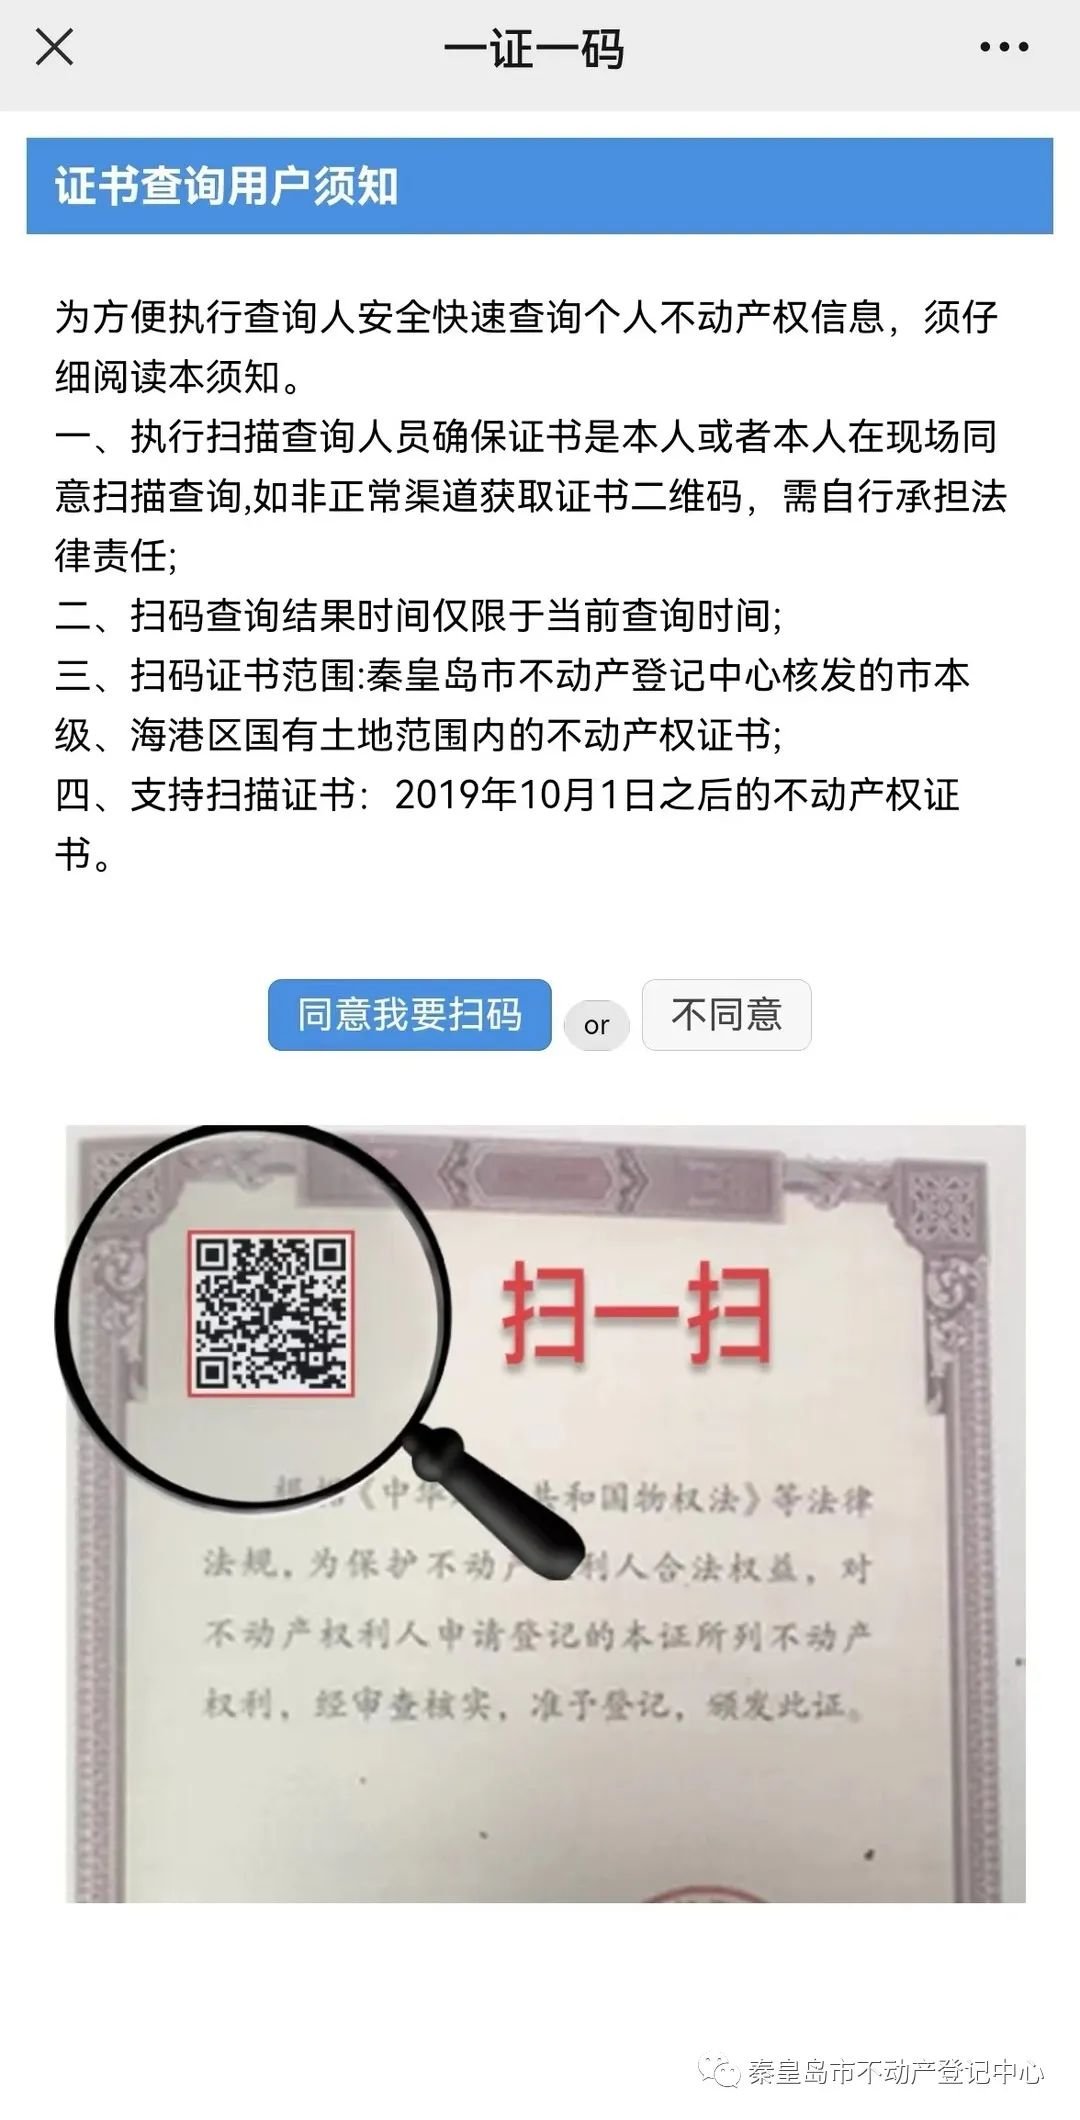 秦皇岛 市不动产登记中心开通不动产登记“一证一码”便民服务新模式